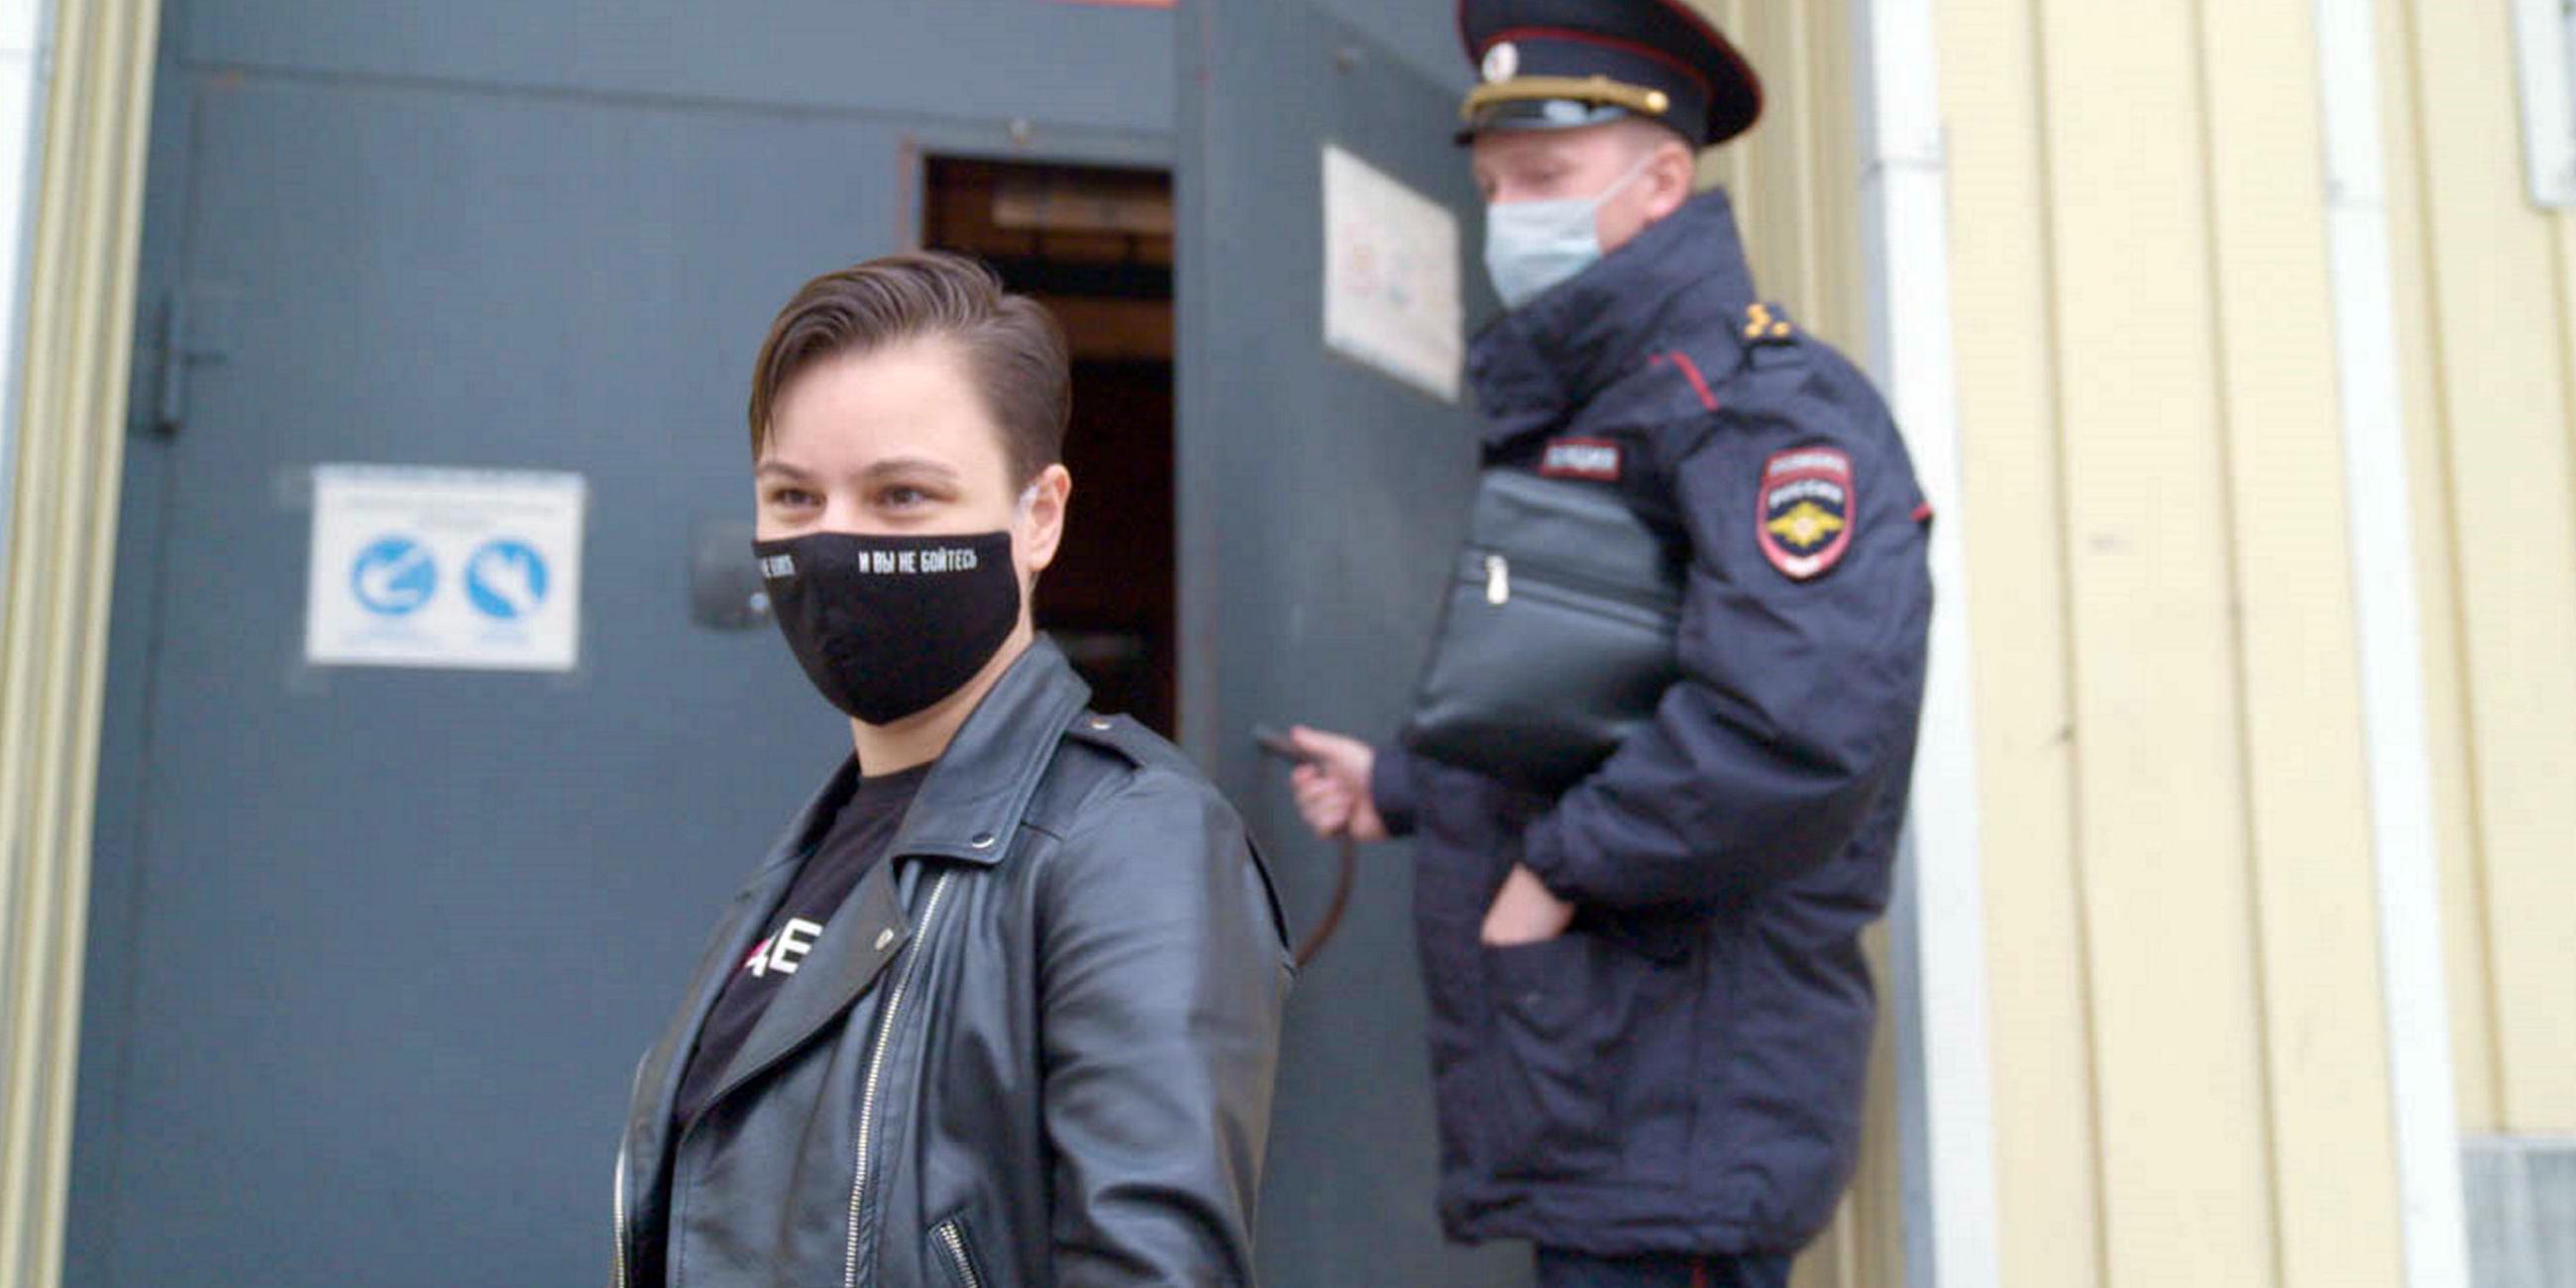 Zwei Personen stehen im Halbprofil vor der Tür zu einem Gebäude. Links eine junge Frau mit kurzem Haar, rechts ein uniformierter Polizist, der den Türgriff festhält. Beide tragen einen Mundschutz.